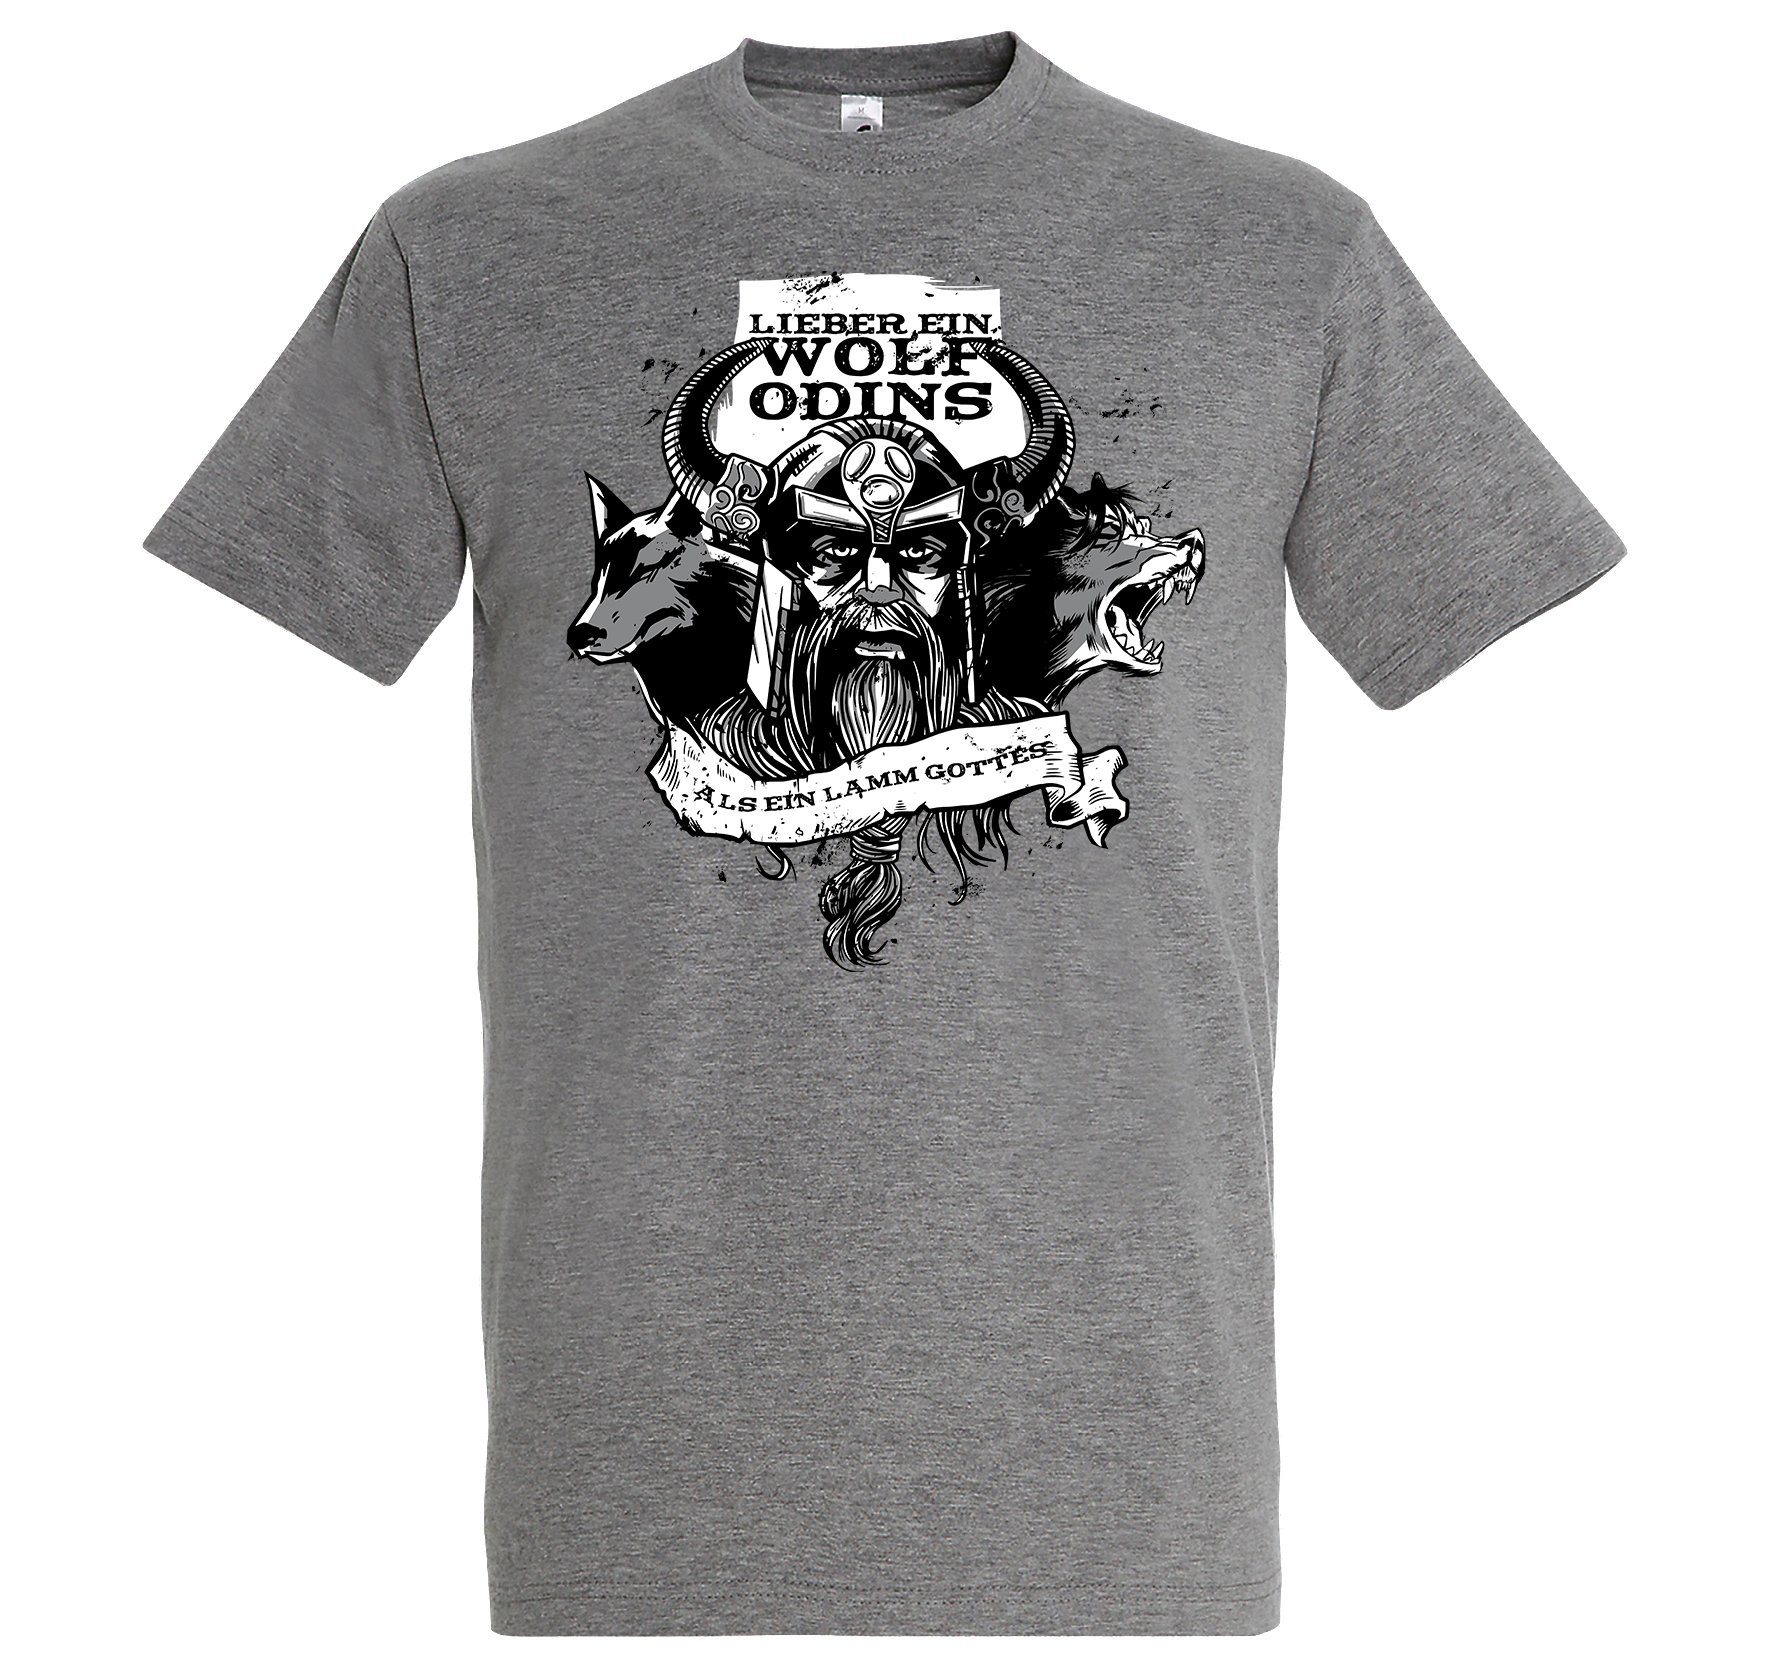 T-Shirt Print-Shirt Spruch ein mit Herren Grau Youth lustigem Designz "Lieber Odins" Wolf